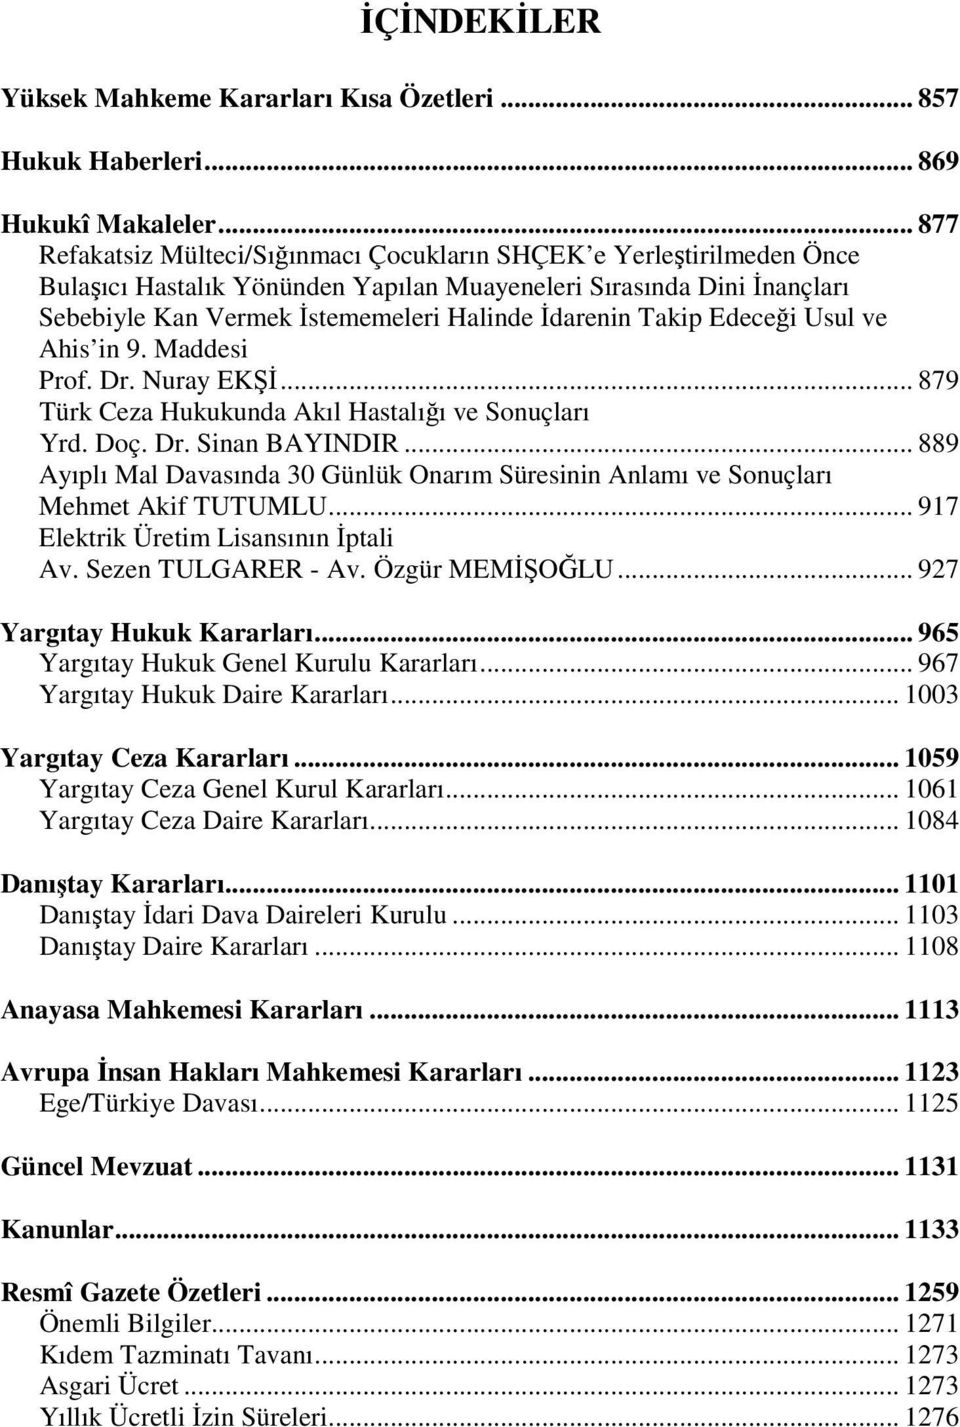 Takip Edeceği Usul ve Ahis in 9. Maddesi Prof. Dr. Nuray EKŞİ... 879 Türk Ceza Hukukunda Akıl Hastalığı ve Sonuçları Yrd. Doç. Dr. Sinan BAYINDIR.